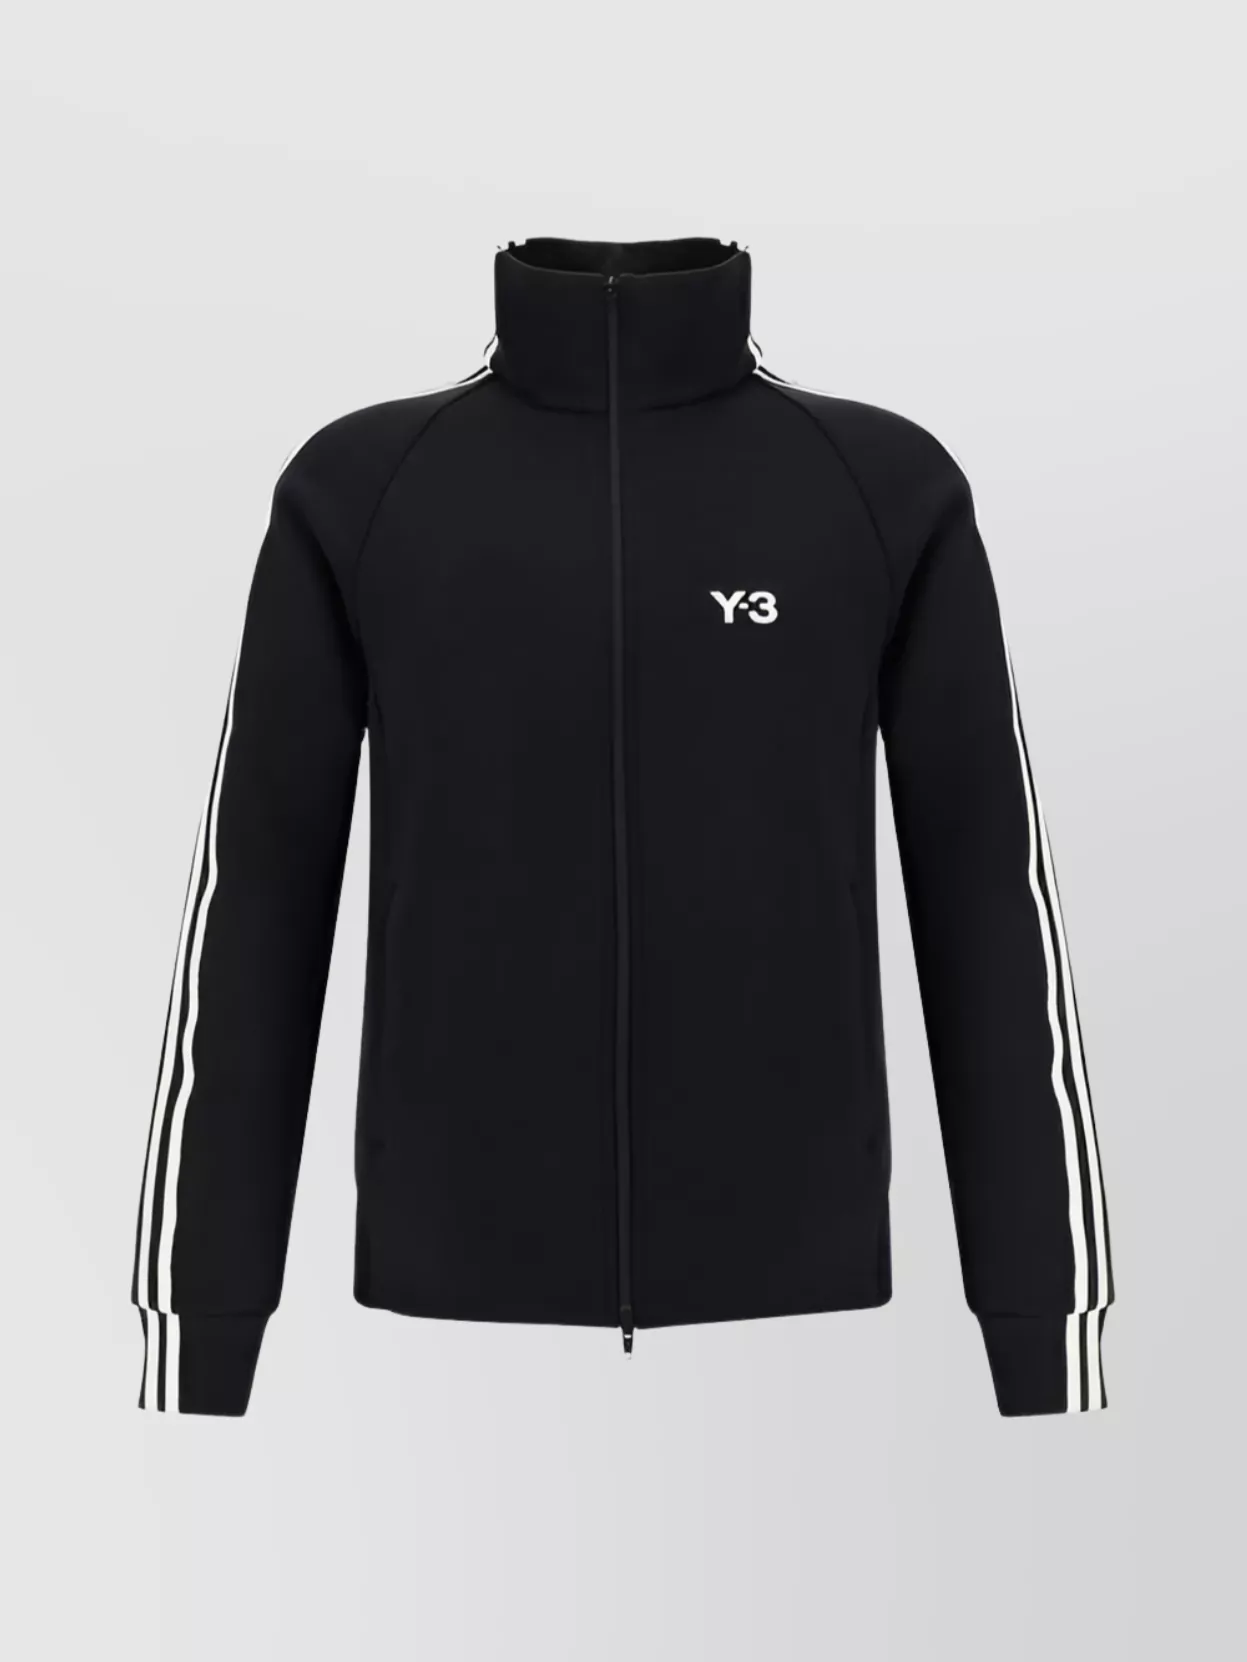 Y-3 High Collar Side Stripes Sweatshirt In Black